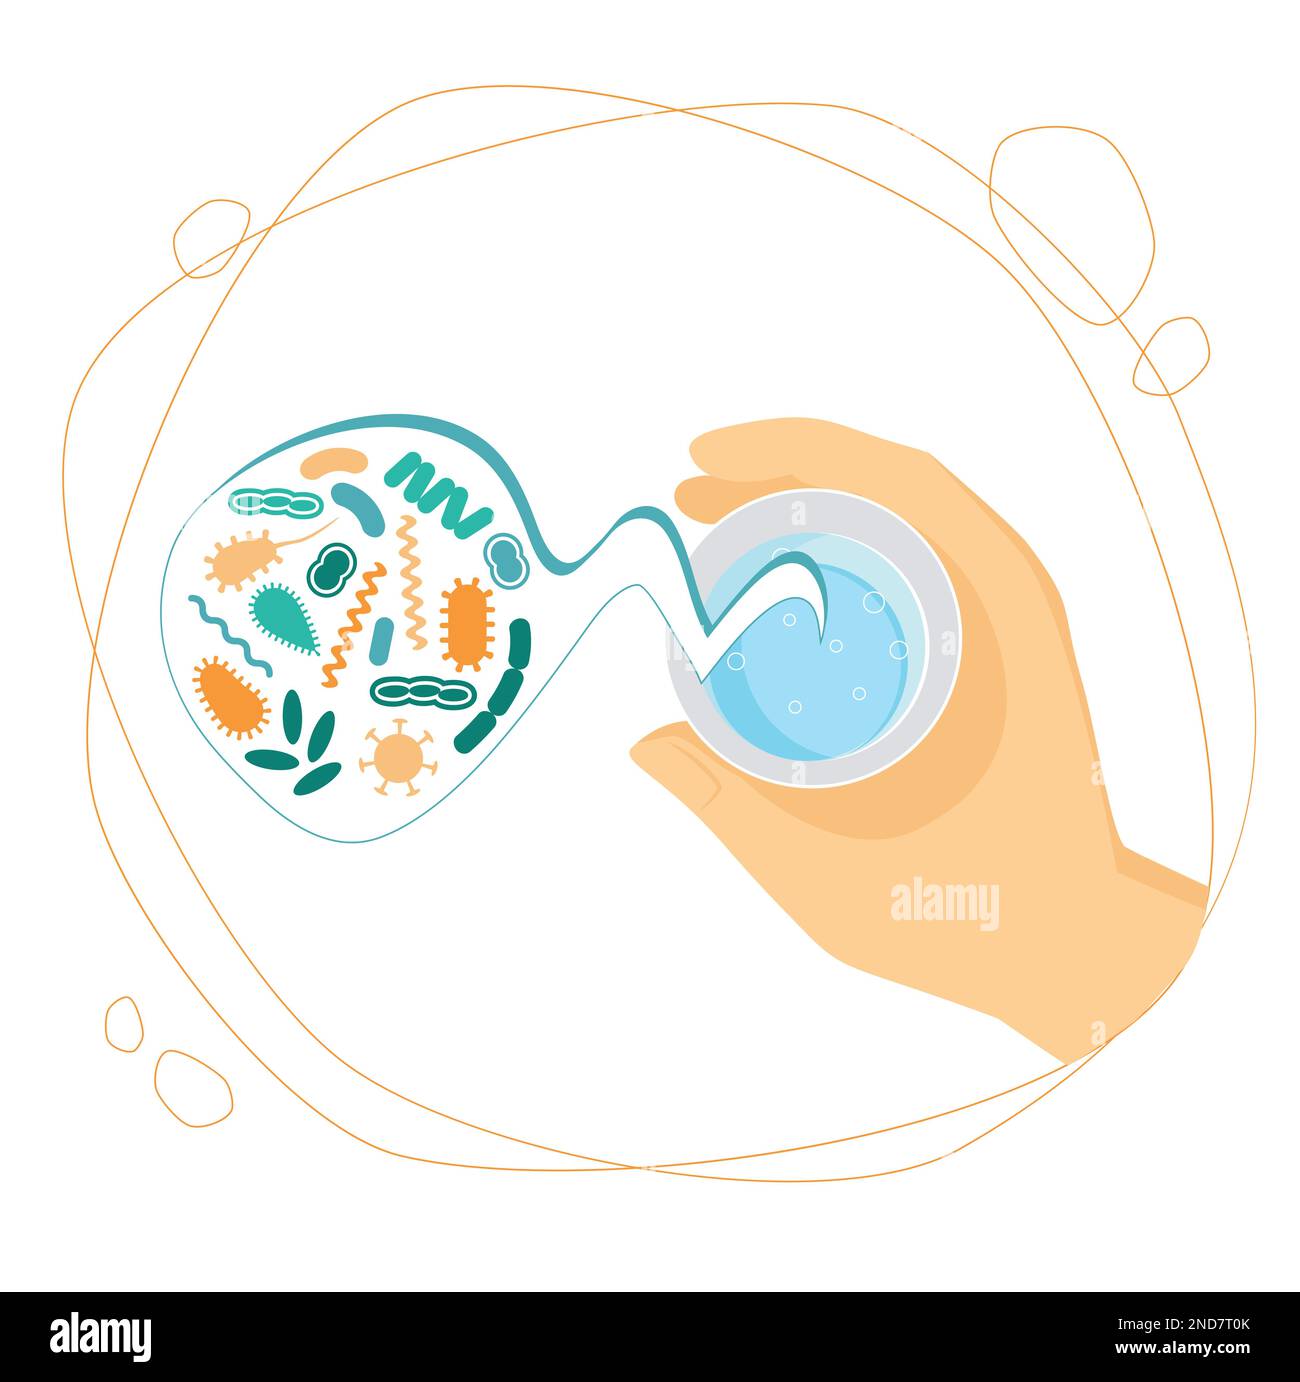 Germi in un bicchiere di acqua sporca, concetto di sicurezza dell'acqua potabile - illustrazione vettoriale Illustrazione Vettoriale